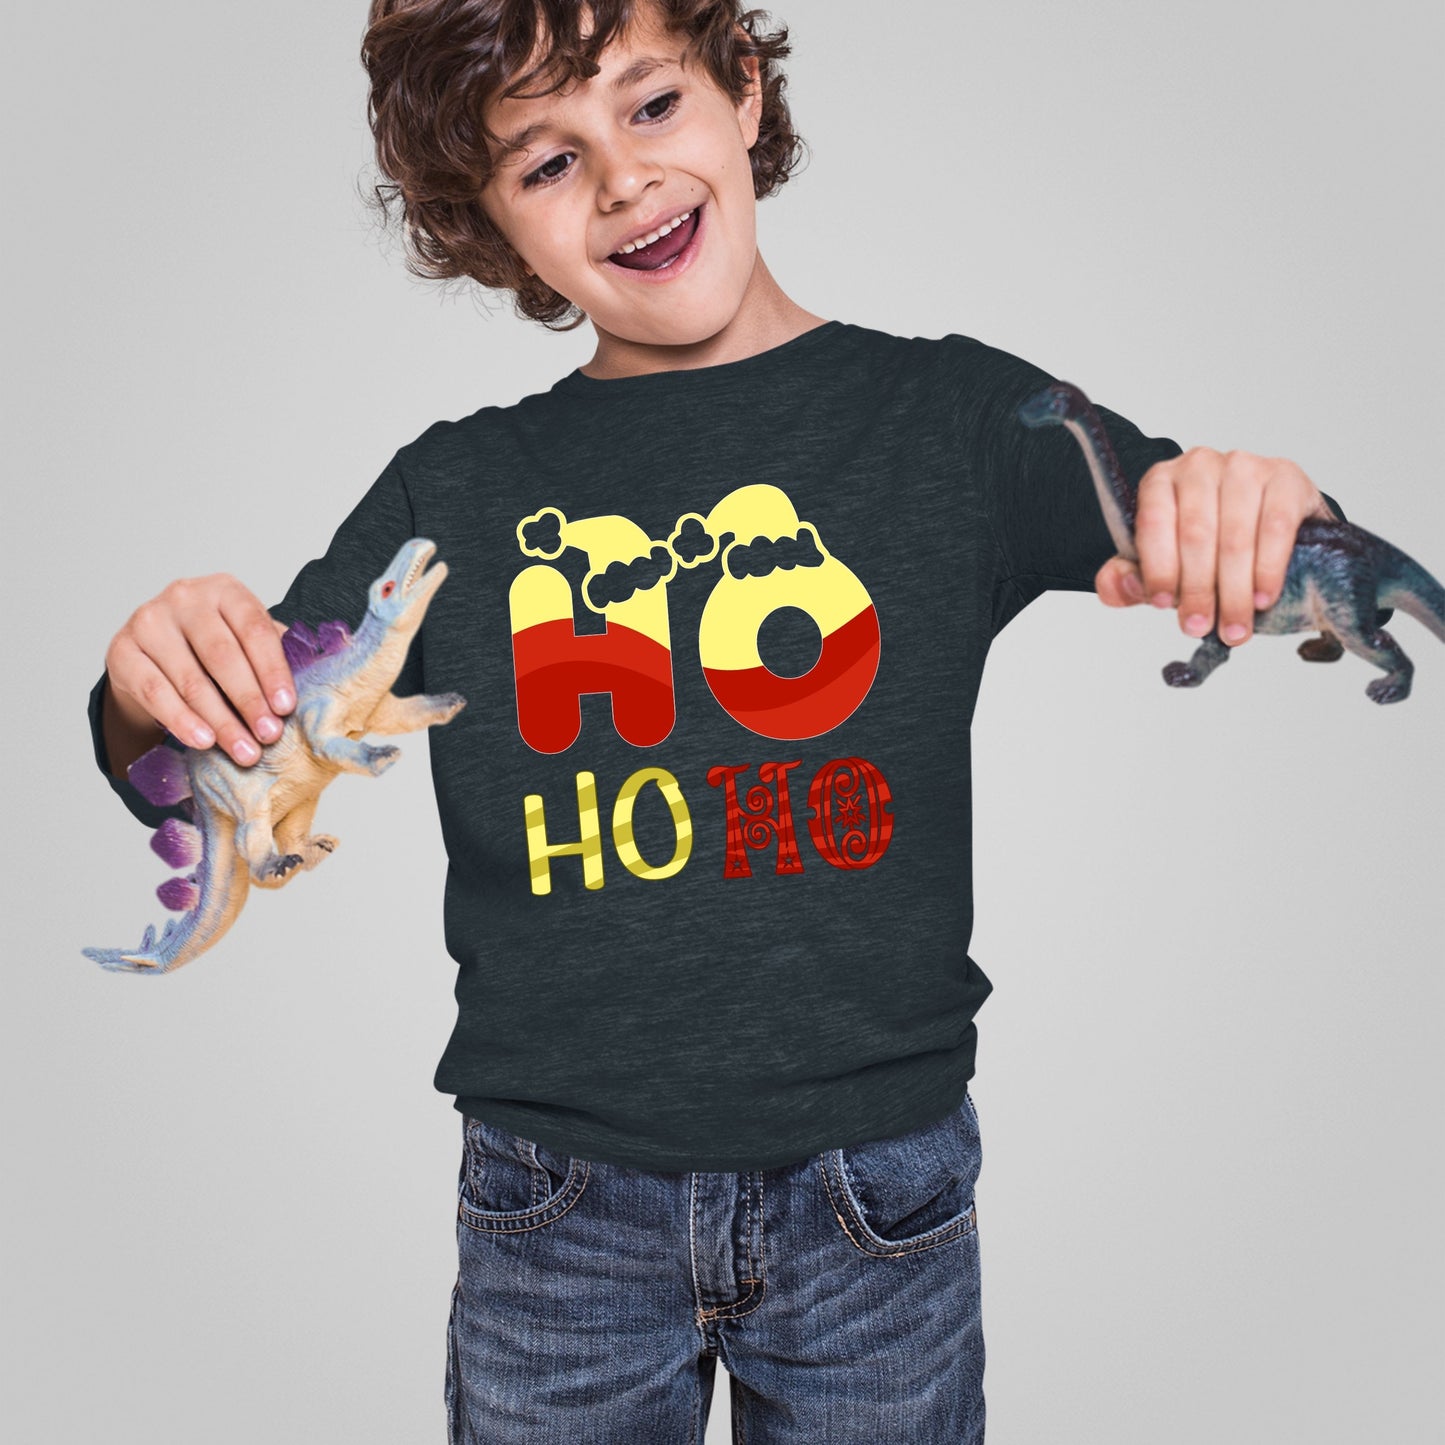 Ho Ho Ho, Christmas Crewneck For Toddler, Christmas Long Sleeves, Christmas Sweatshirt, Christmas Sweater, Christmas Present